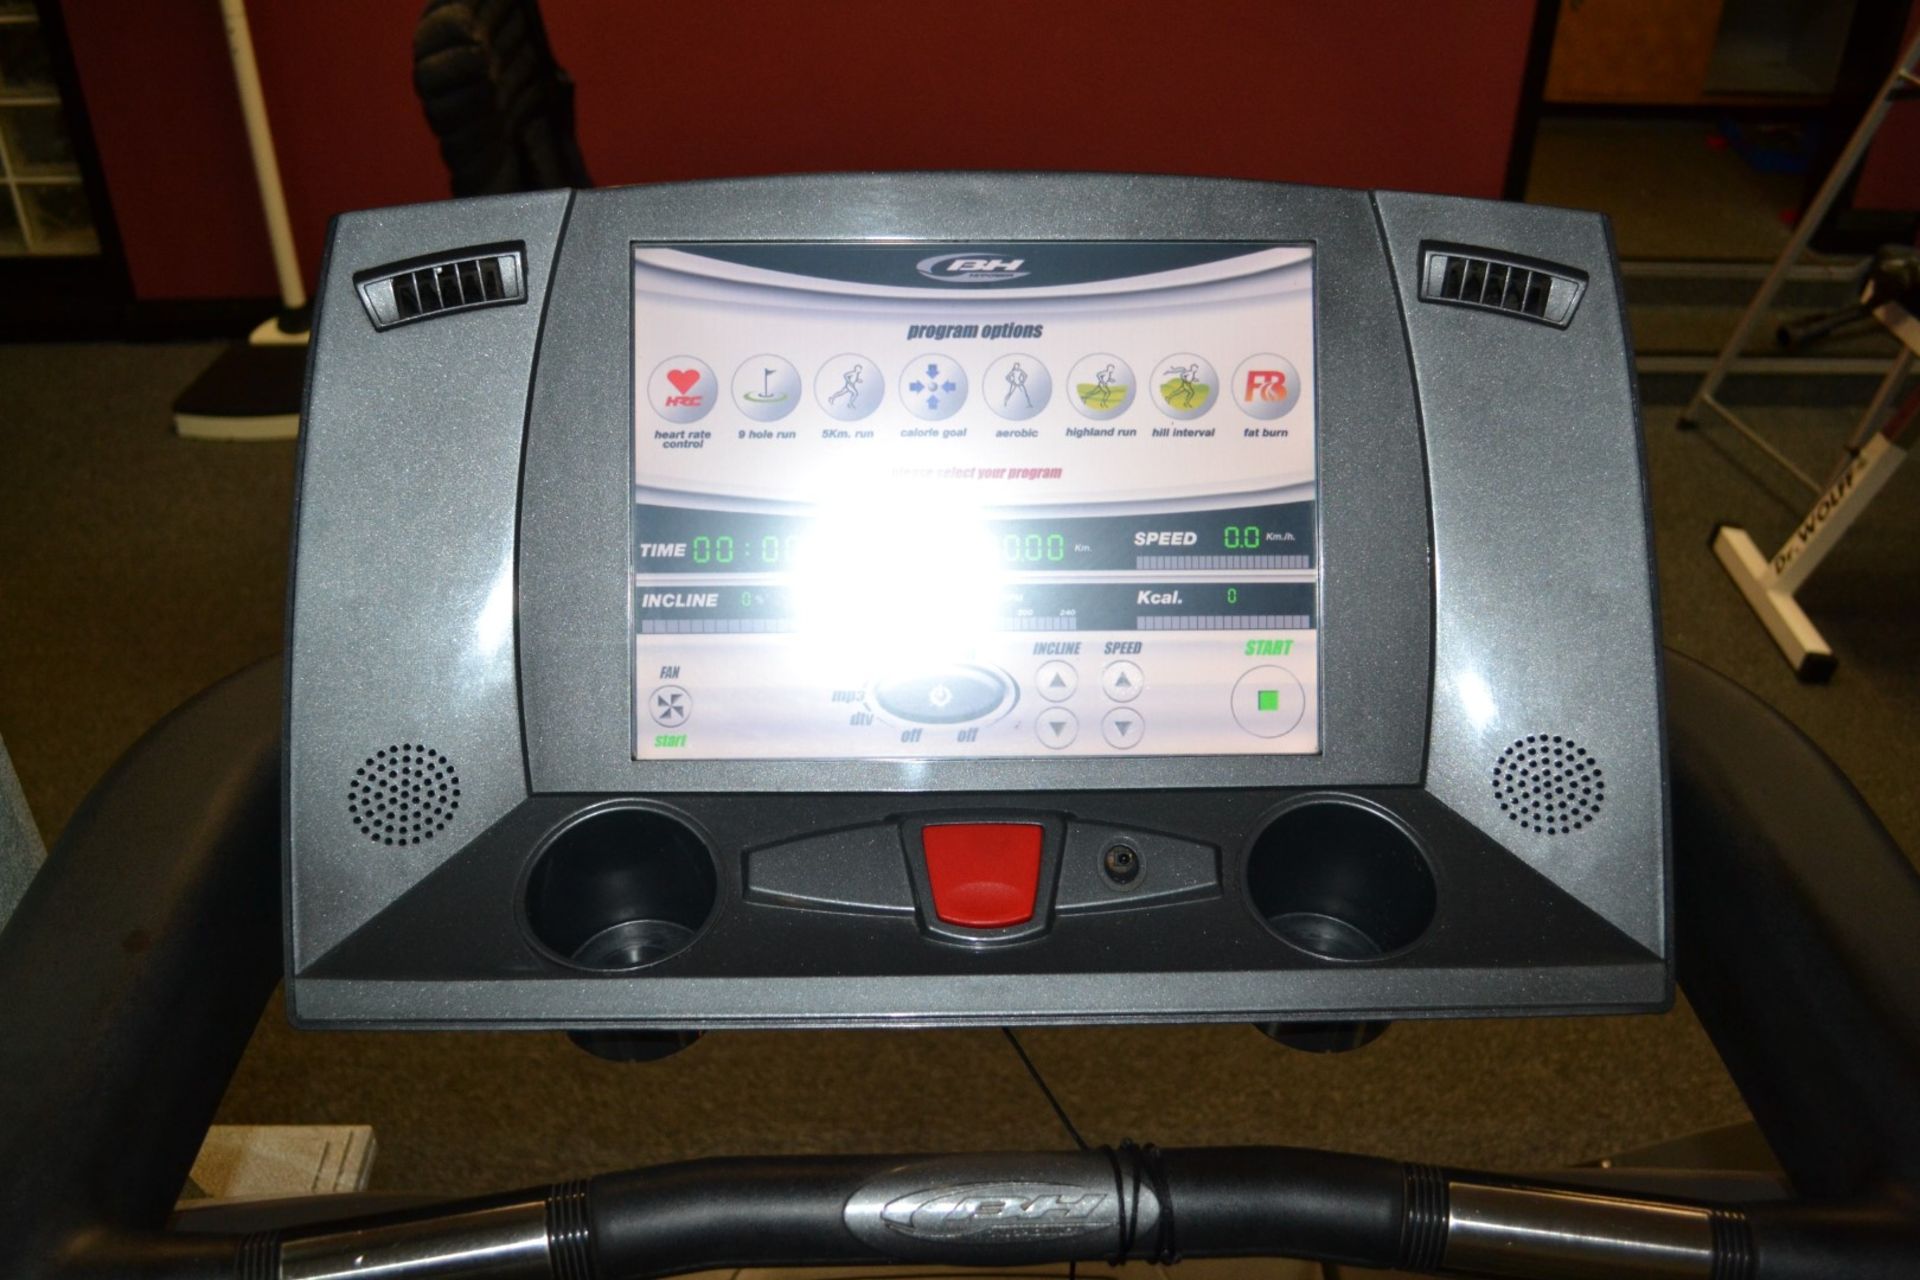 1 x BH Fitness Treadmill Model BH 300T - Dimensions: L230 x H150 x W82cm - Ref: J2051/1FG - - Image 3 of 3